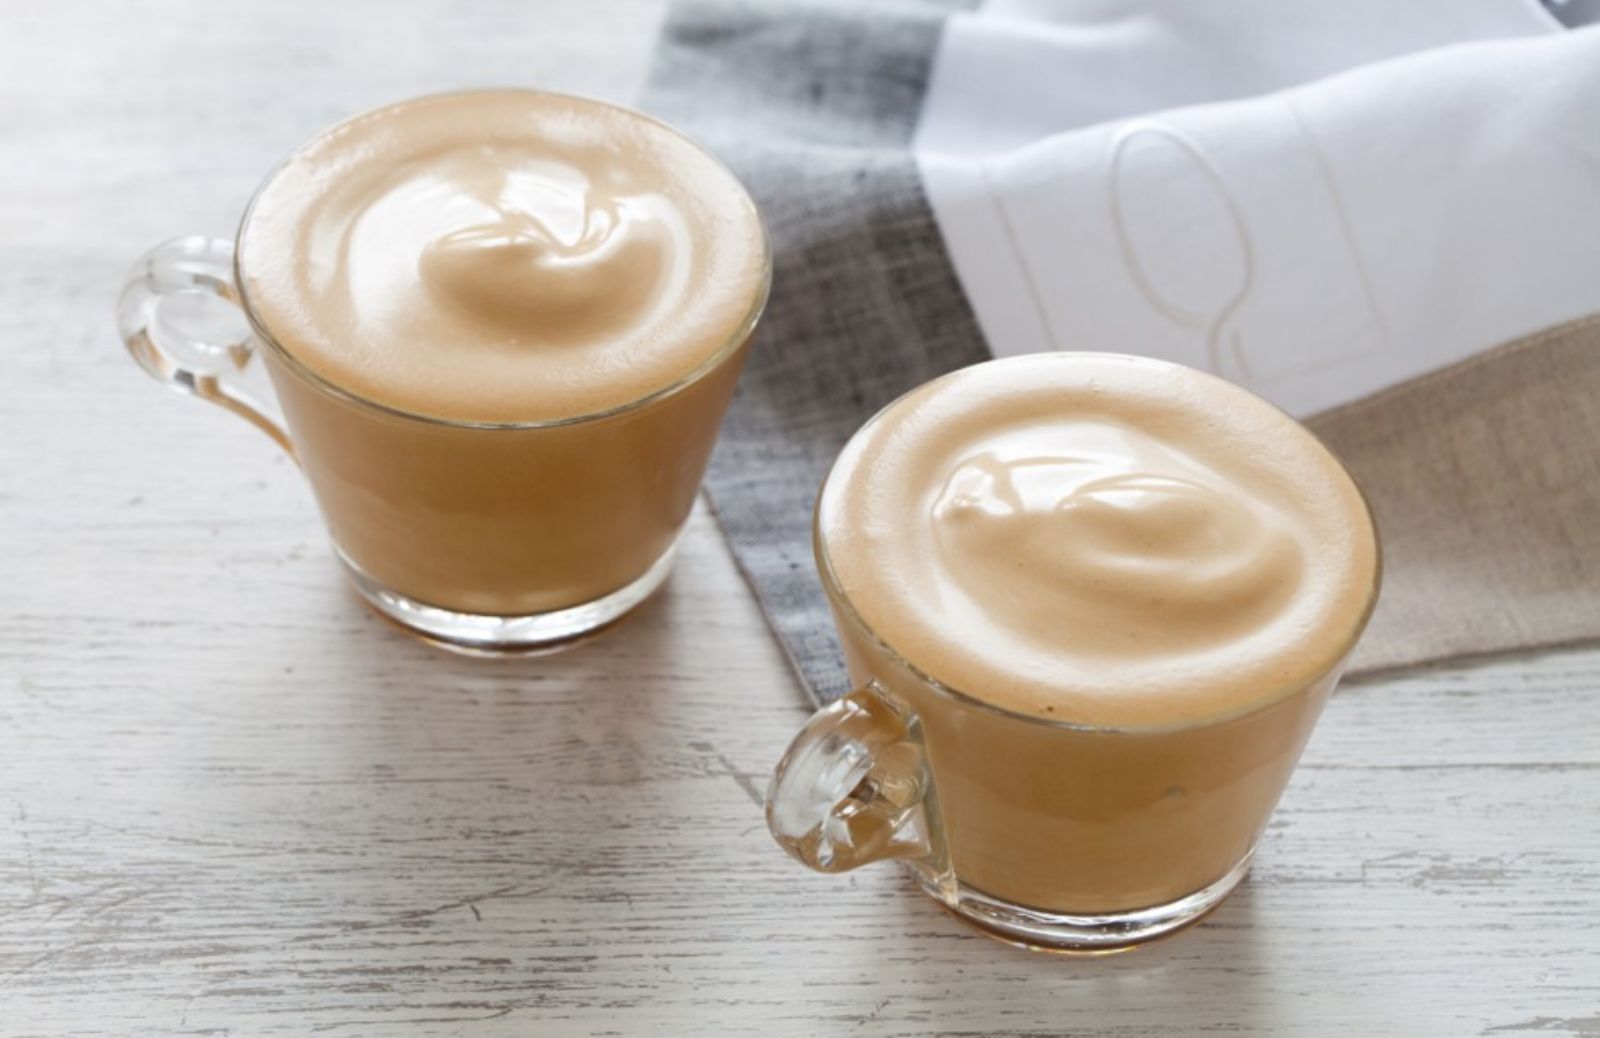 Crema di caffè alla Nutella: come farla in 5 minuti